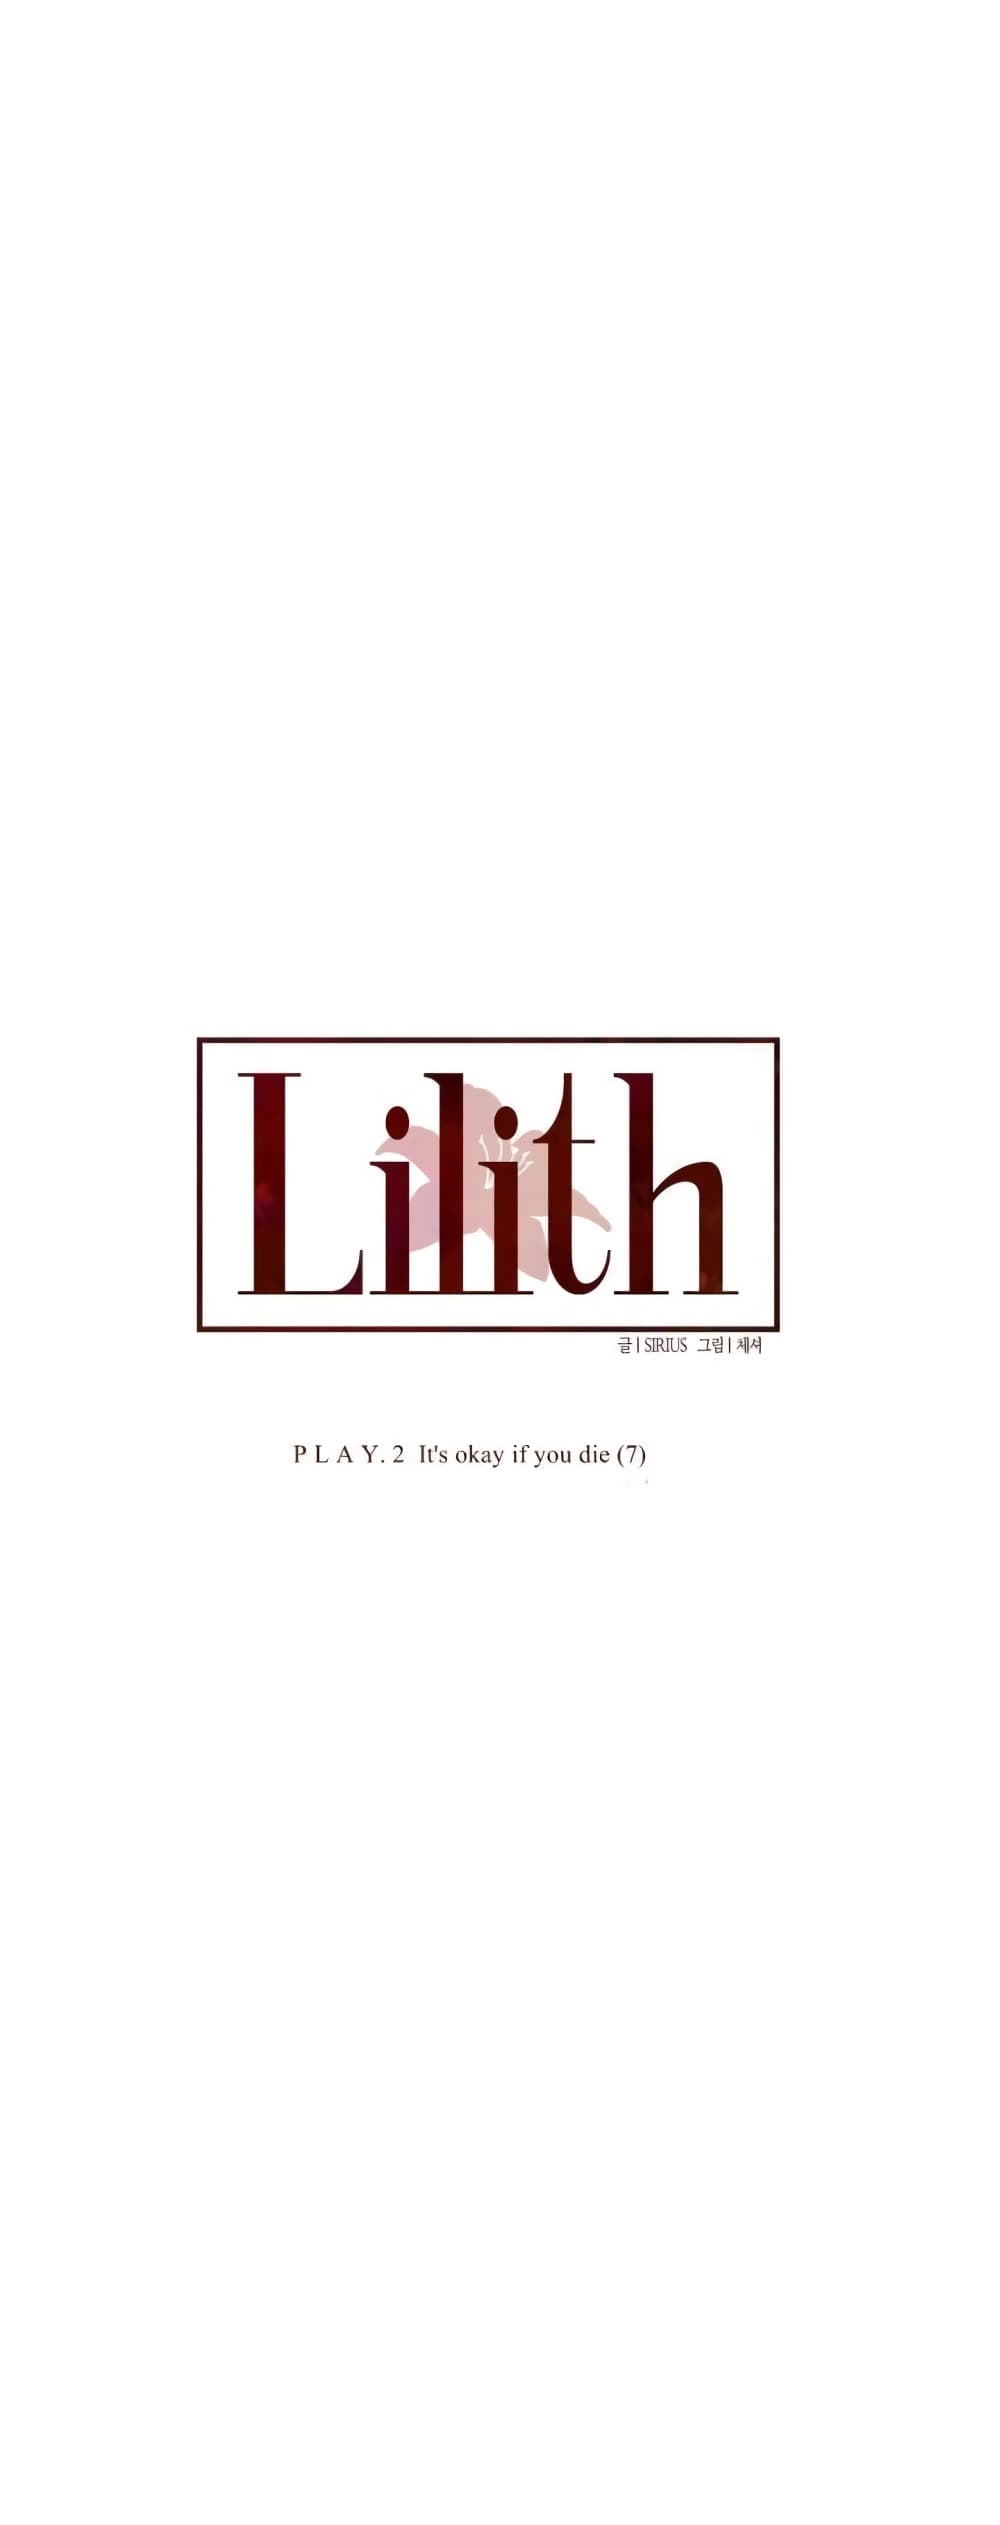 Lilith 15 11